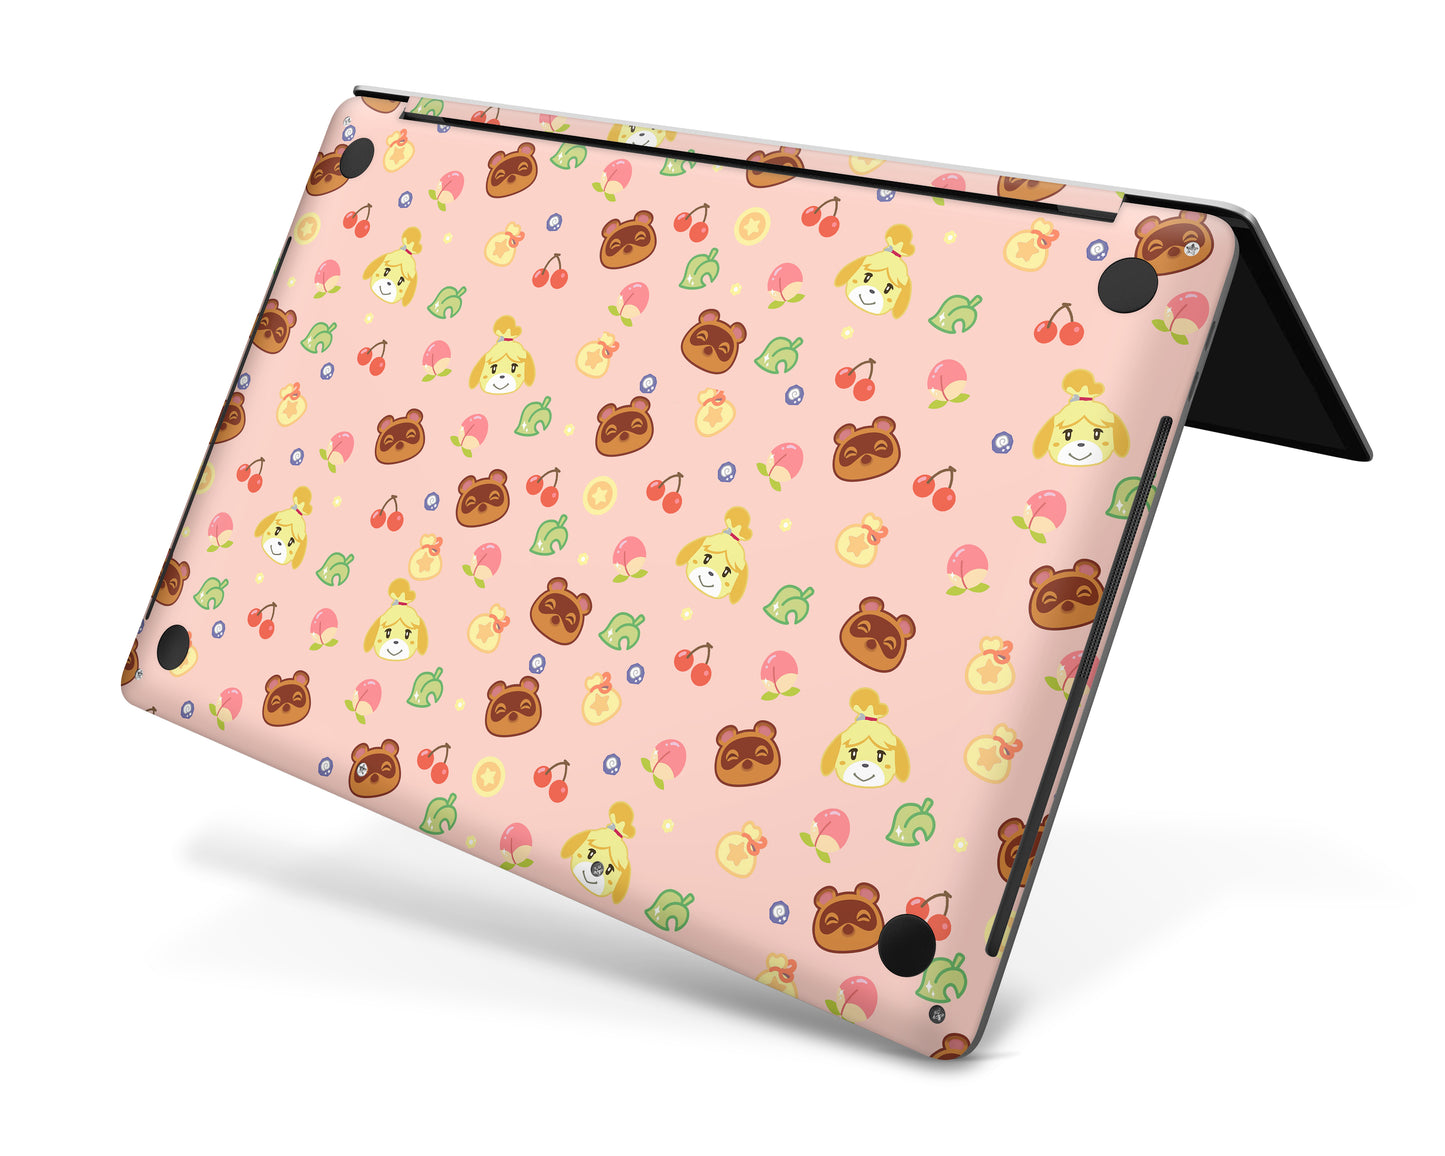 Cute Animal Crossing Pattern MacBook Skin